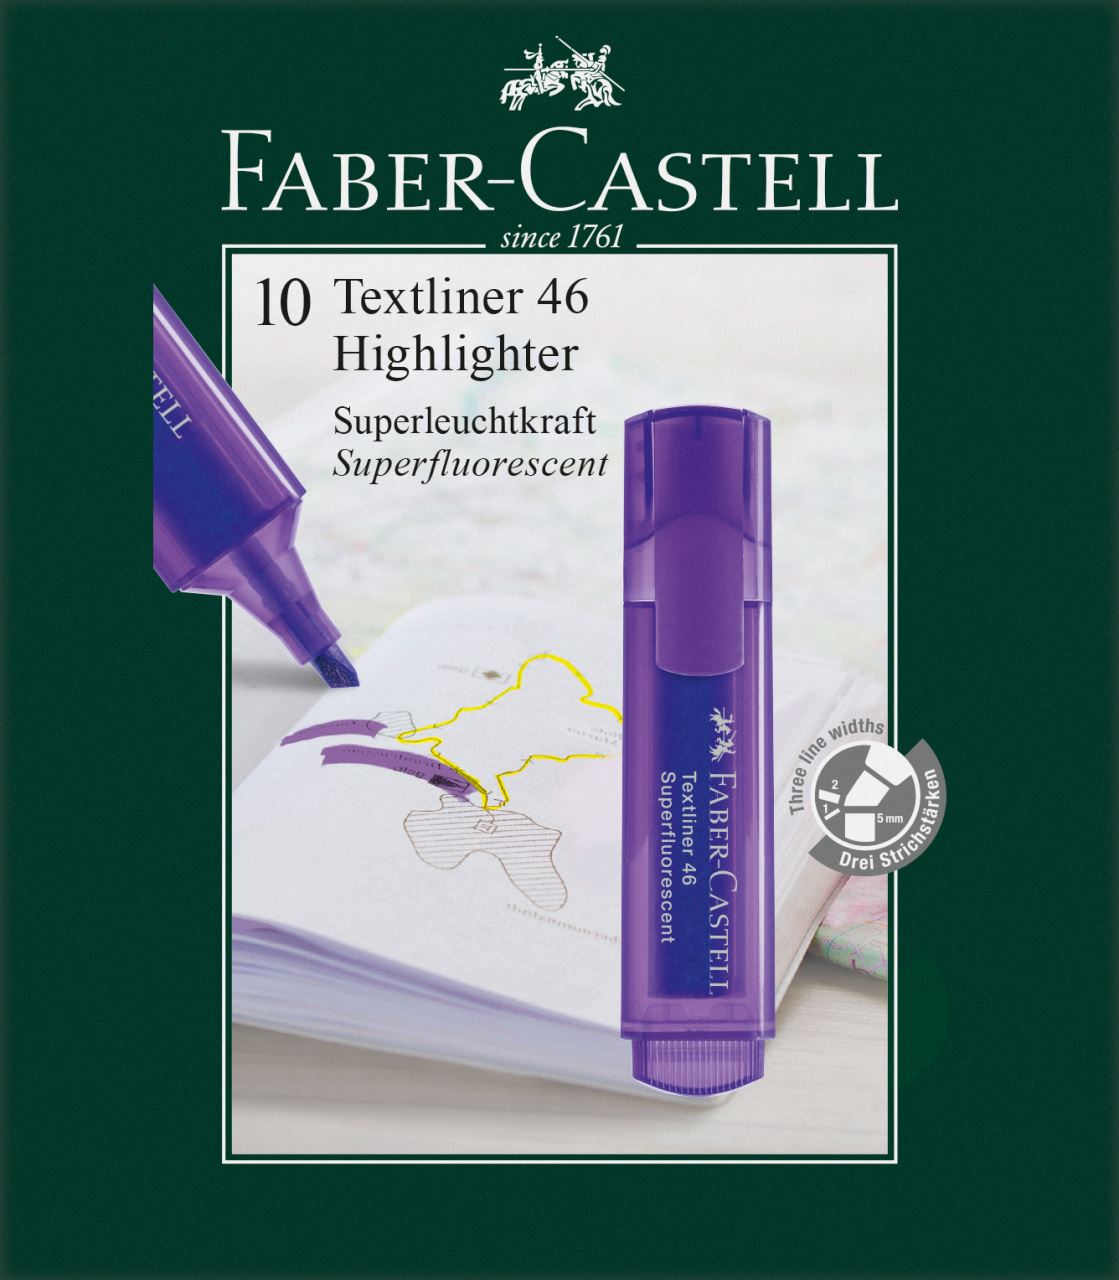 Faber-Castell - Surligneur Textliner 1546 violet